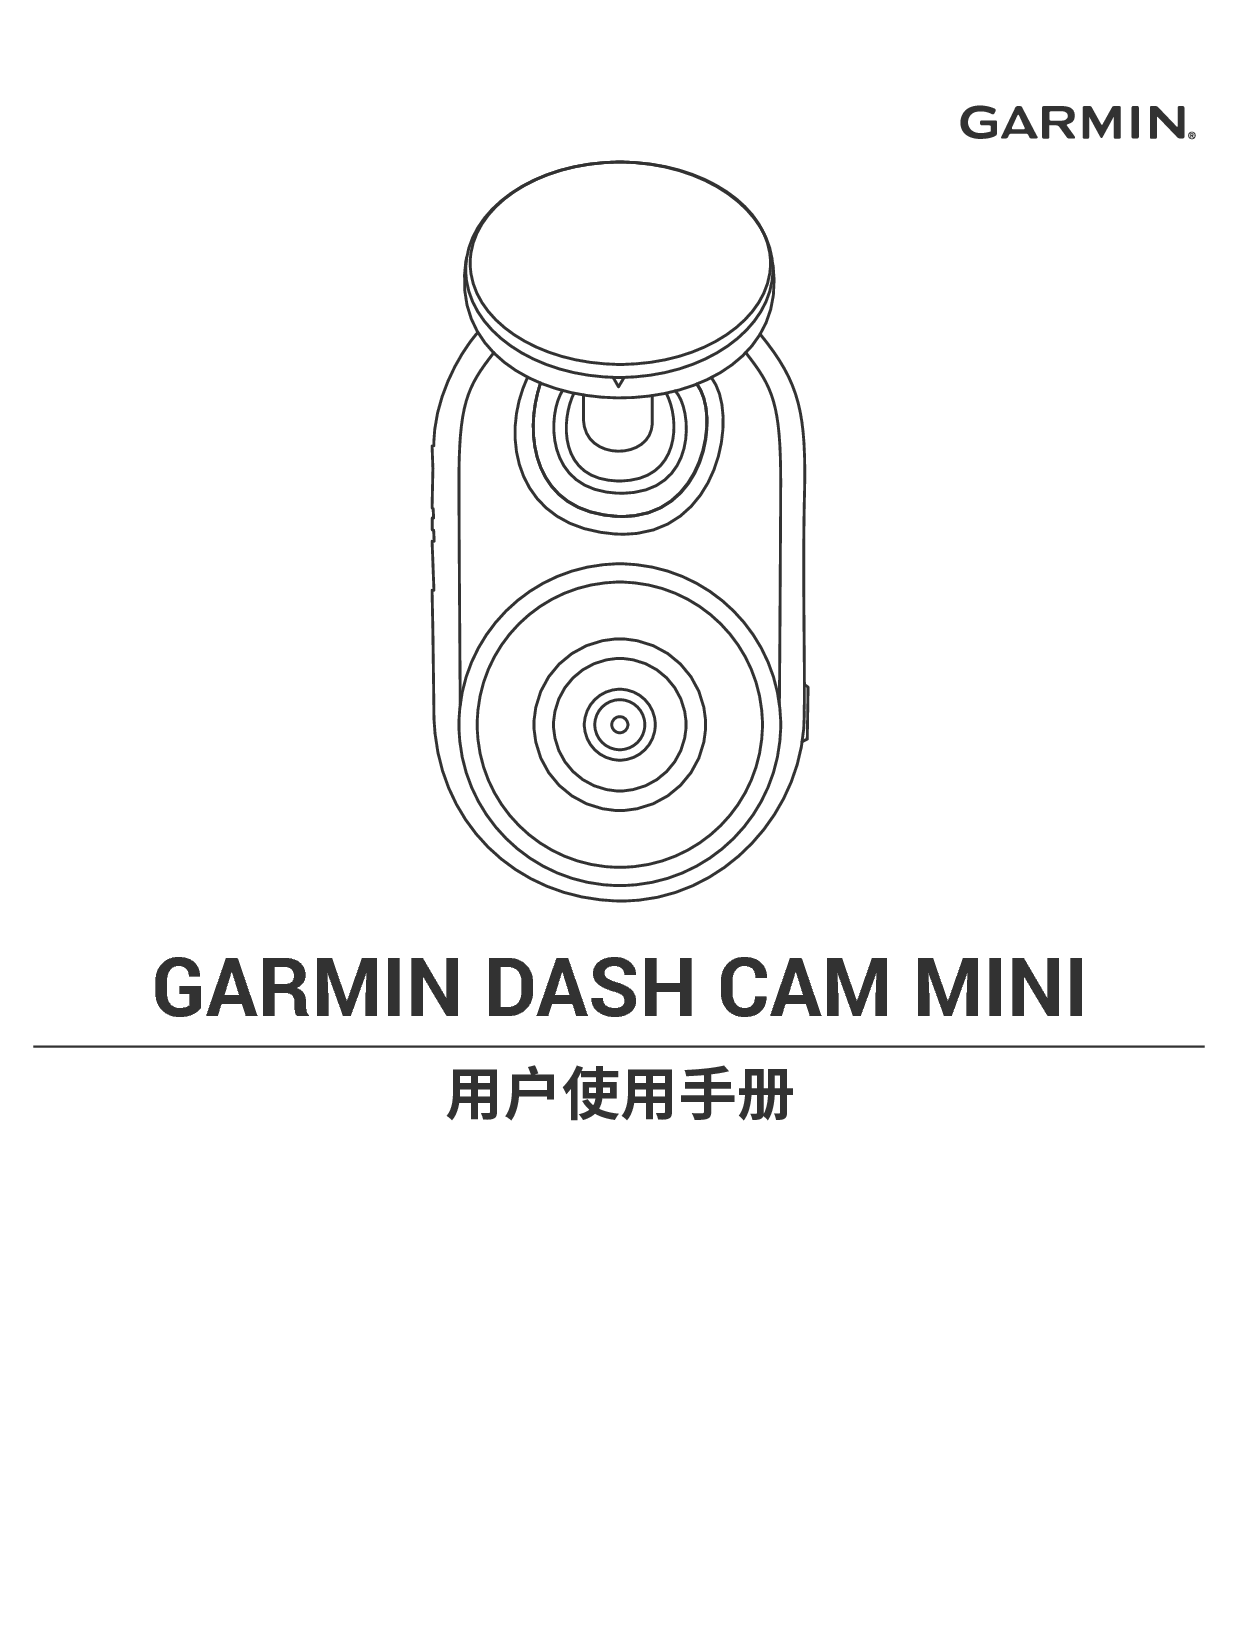 佳明 Garmin DASH CAM MINI 用户手册 封面